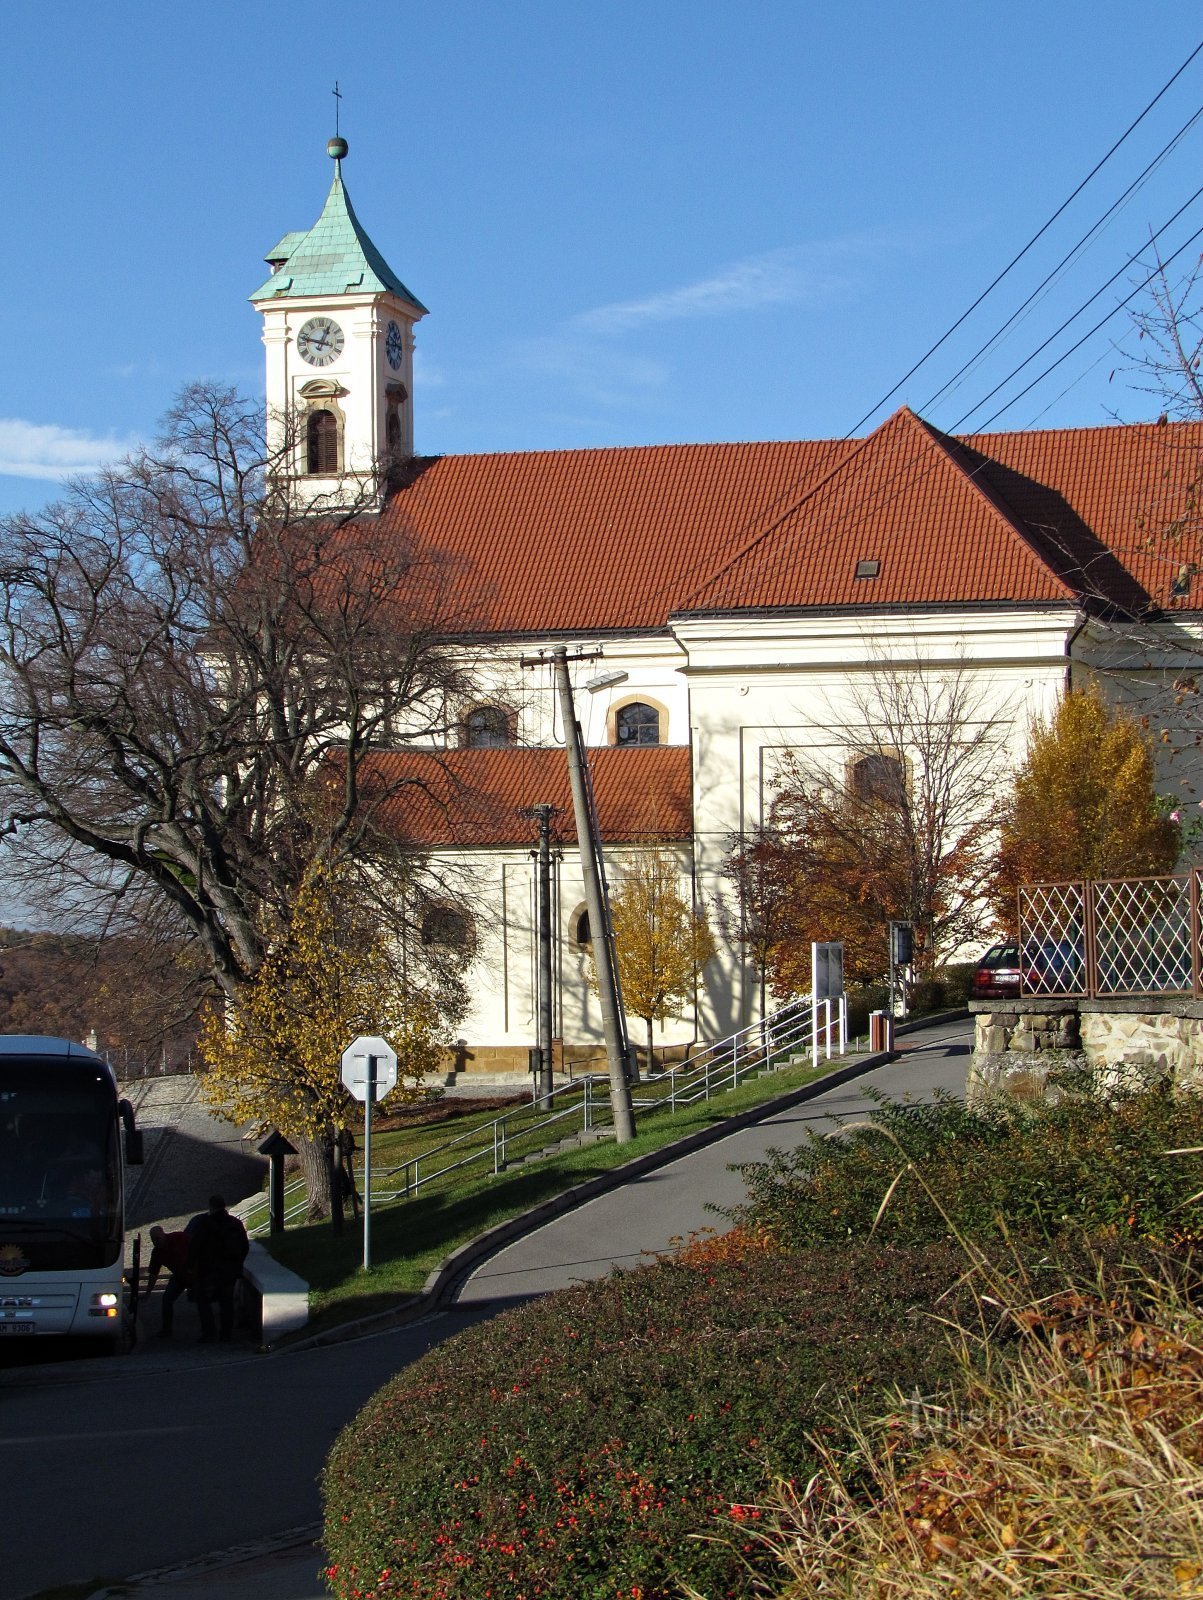 Velký Ořechov - church of St. Wenceslas